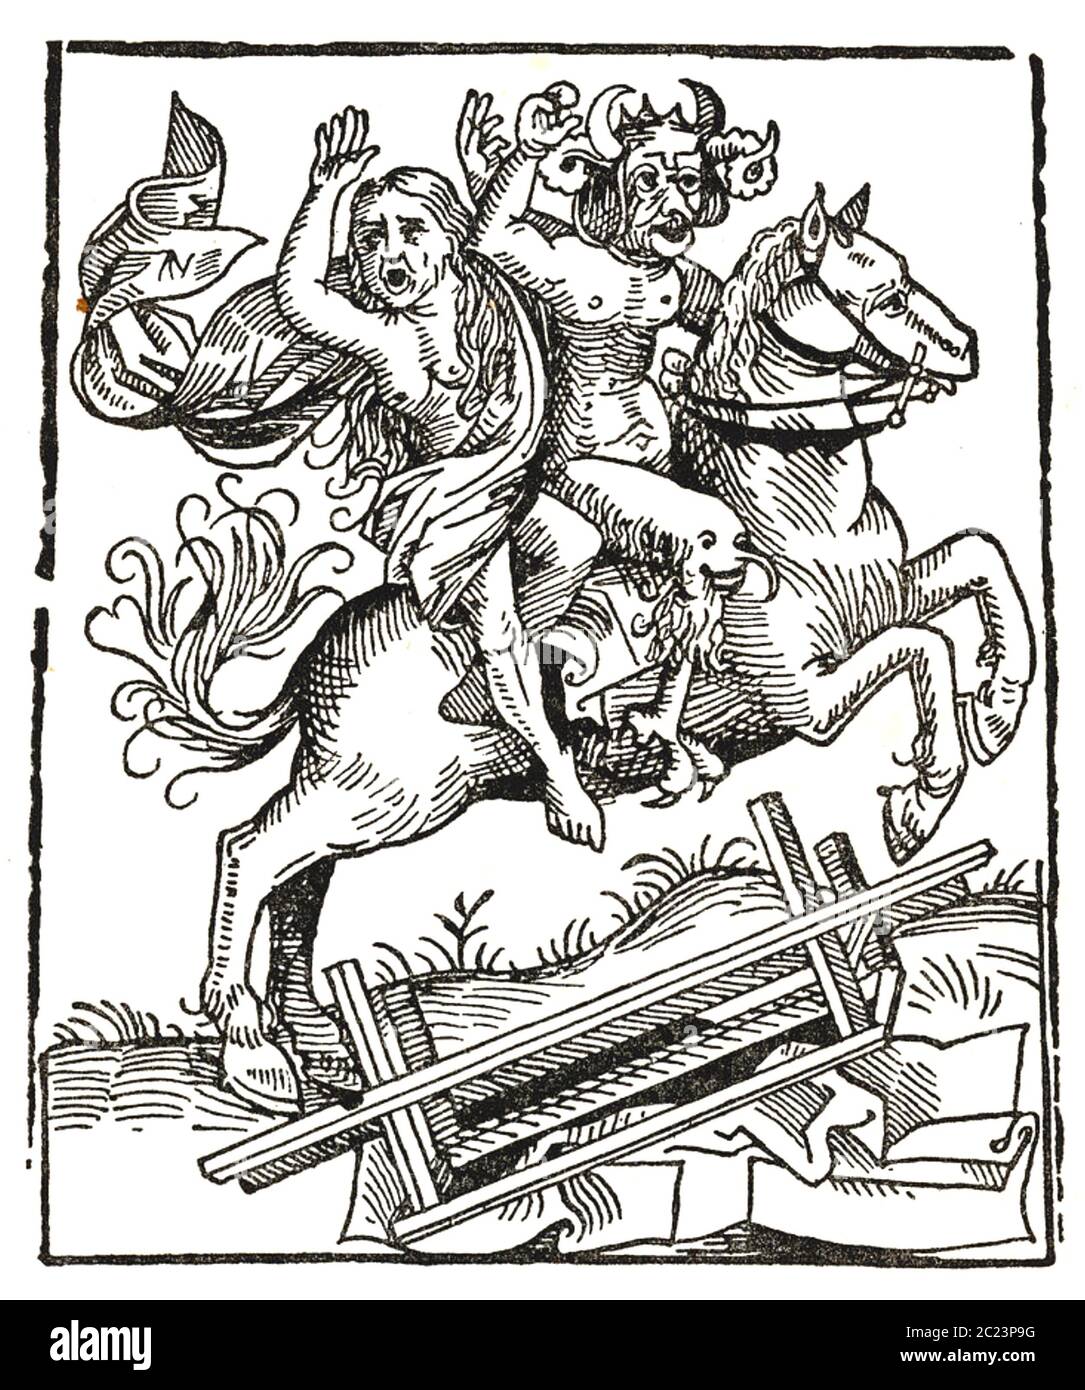 STREGA DI BERKELEY leggenda medievale inglese. Taglio di legno della Cronaca di Norimberga che mostra la strega che viene portata fuori dal Diavolo. Foto Stock